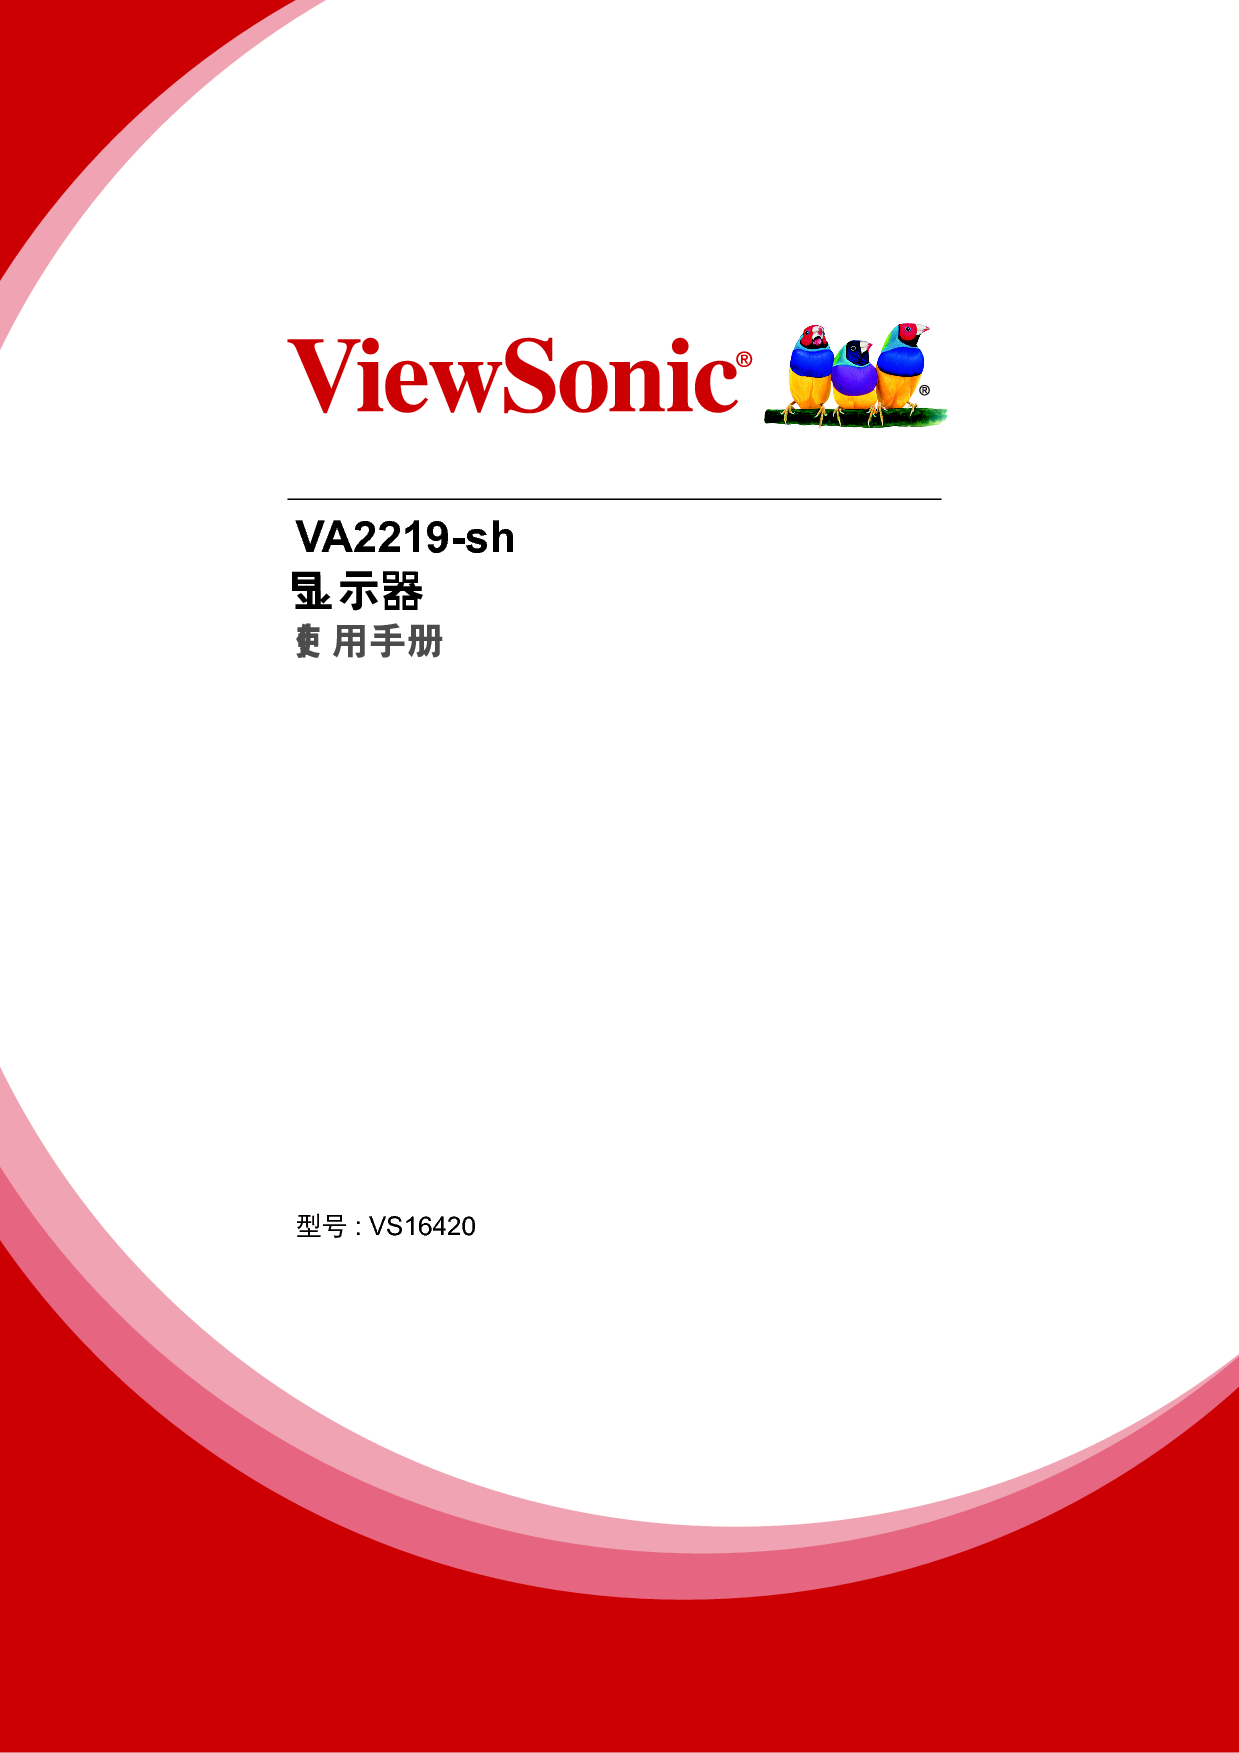 优派 ViewSonic VA2219-sh 使用手册 封面